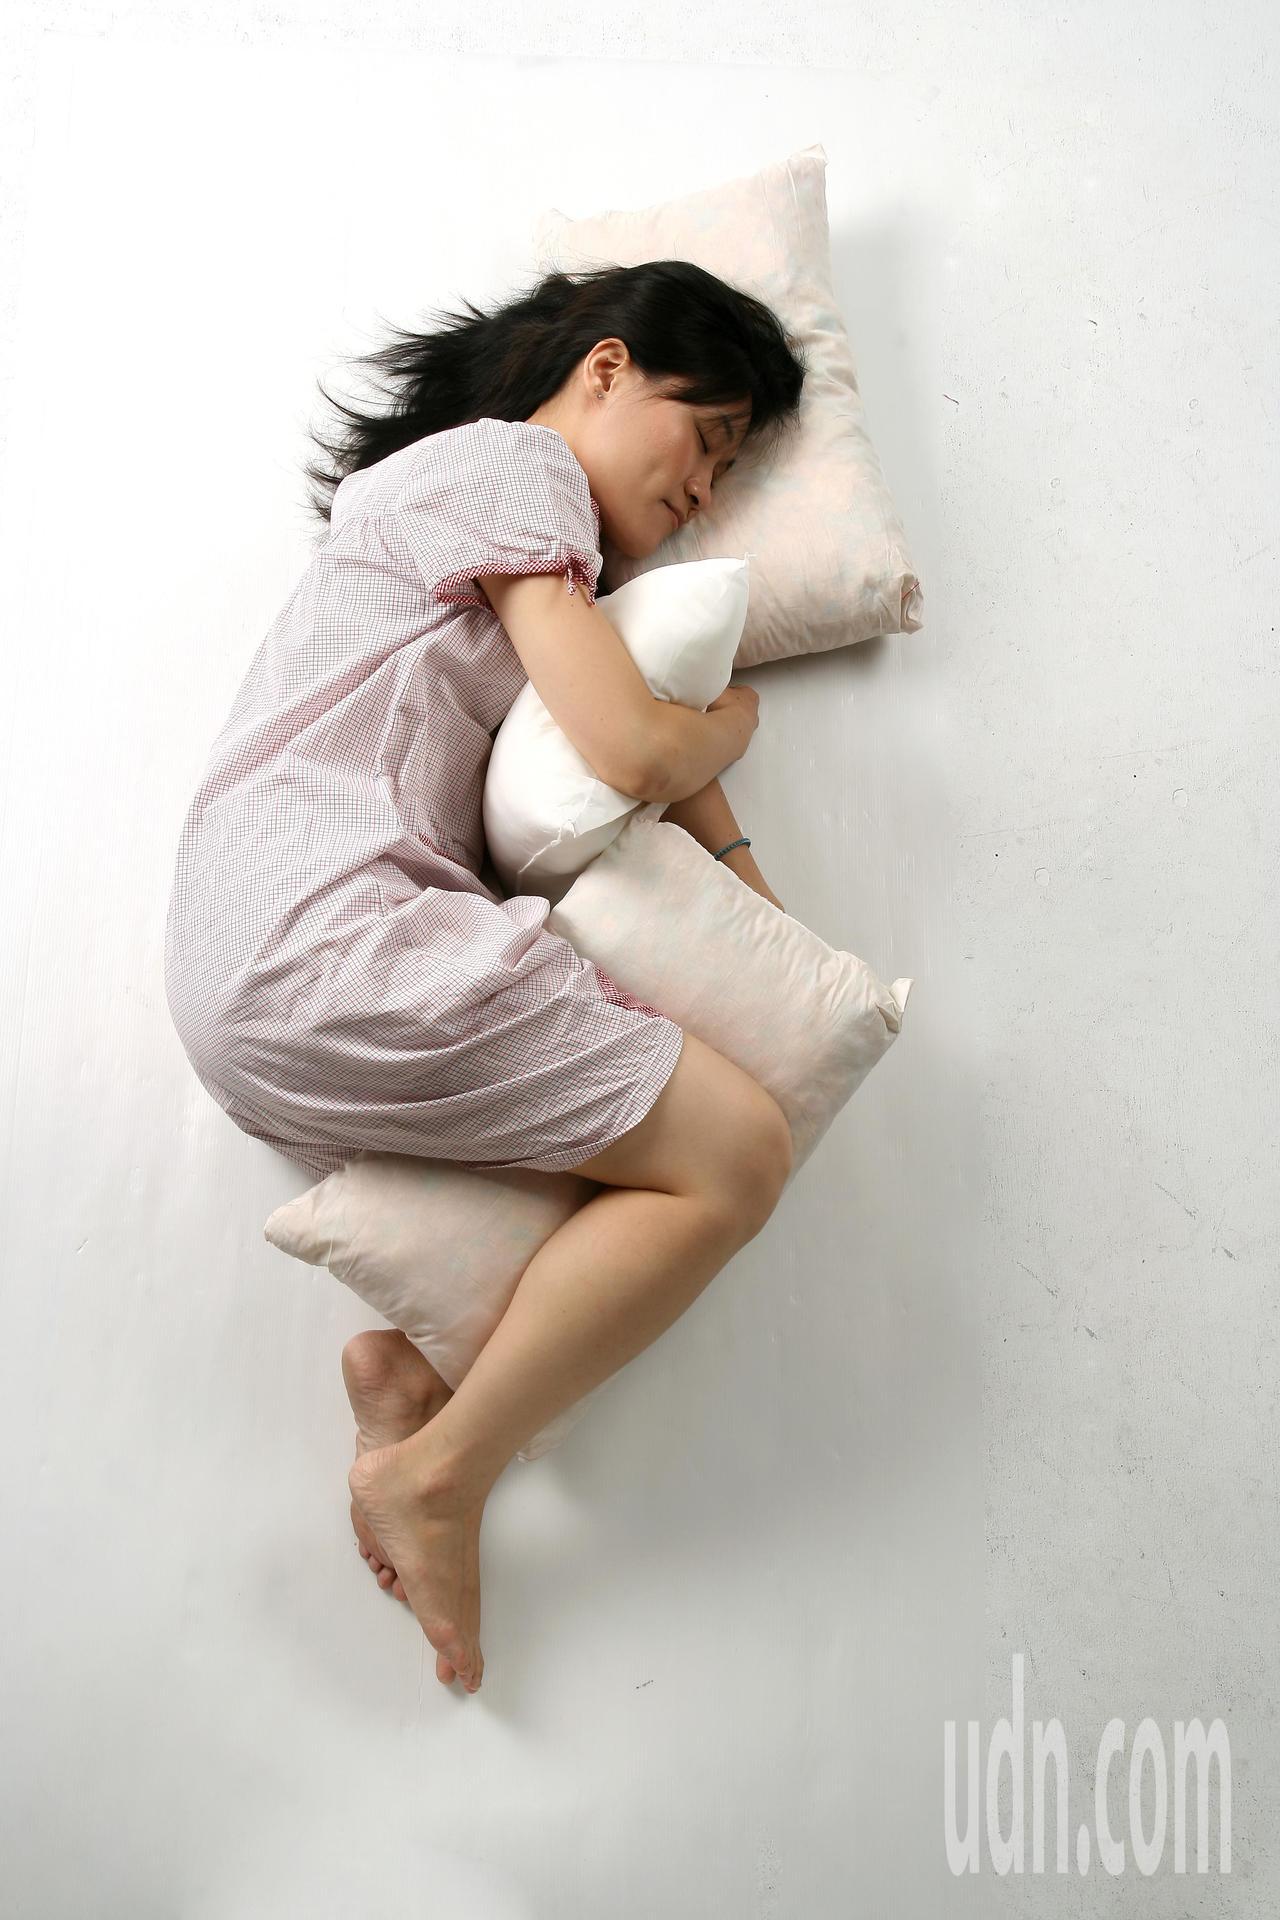 台灣睡眠醫學會過去統計國內約有四成民眾對睡眠品質不滿意、兩成民眾感到困擾，但未達慢性失眠標準。睡眠專家建議，這群人可先檢視三種會影響睡眠品質的不良習慣，以及近期服用的藥品是否影響睡眠，調整無效再考慮就醫。聯合報系資料照